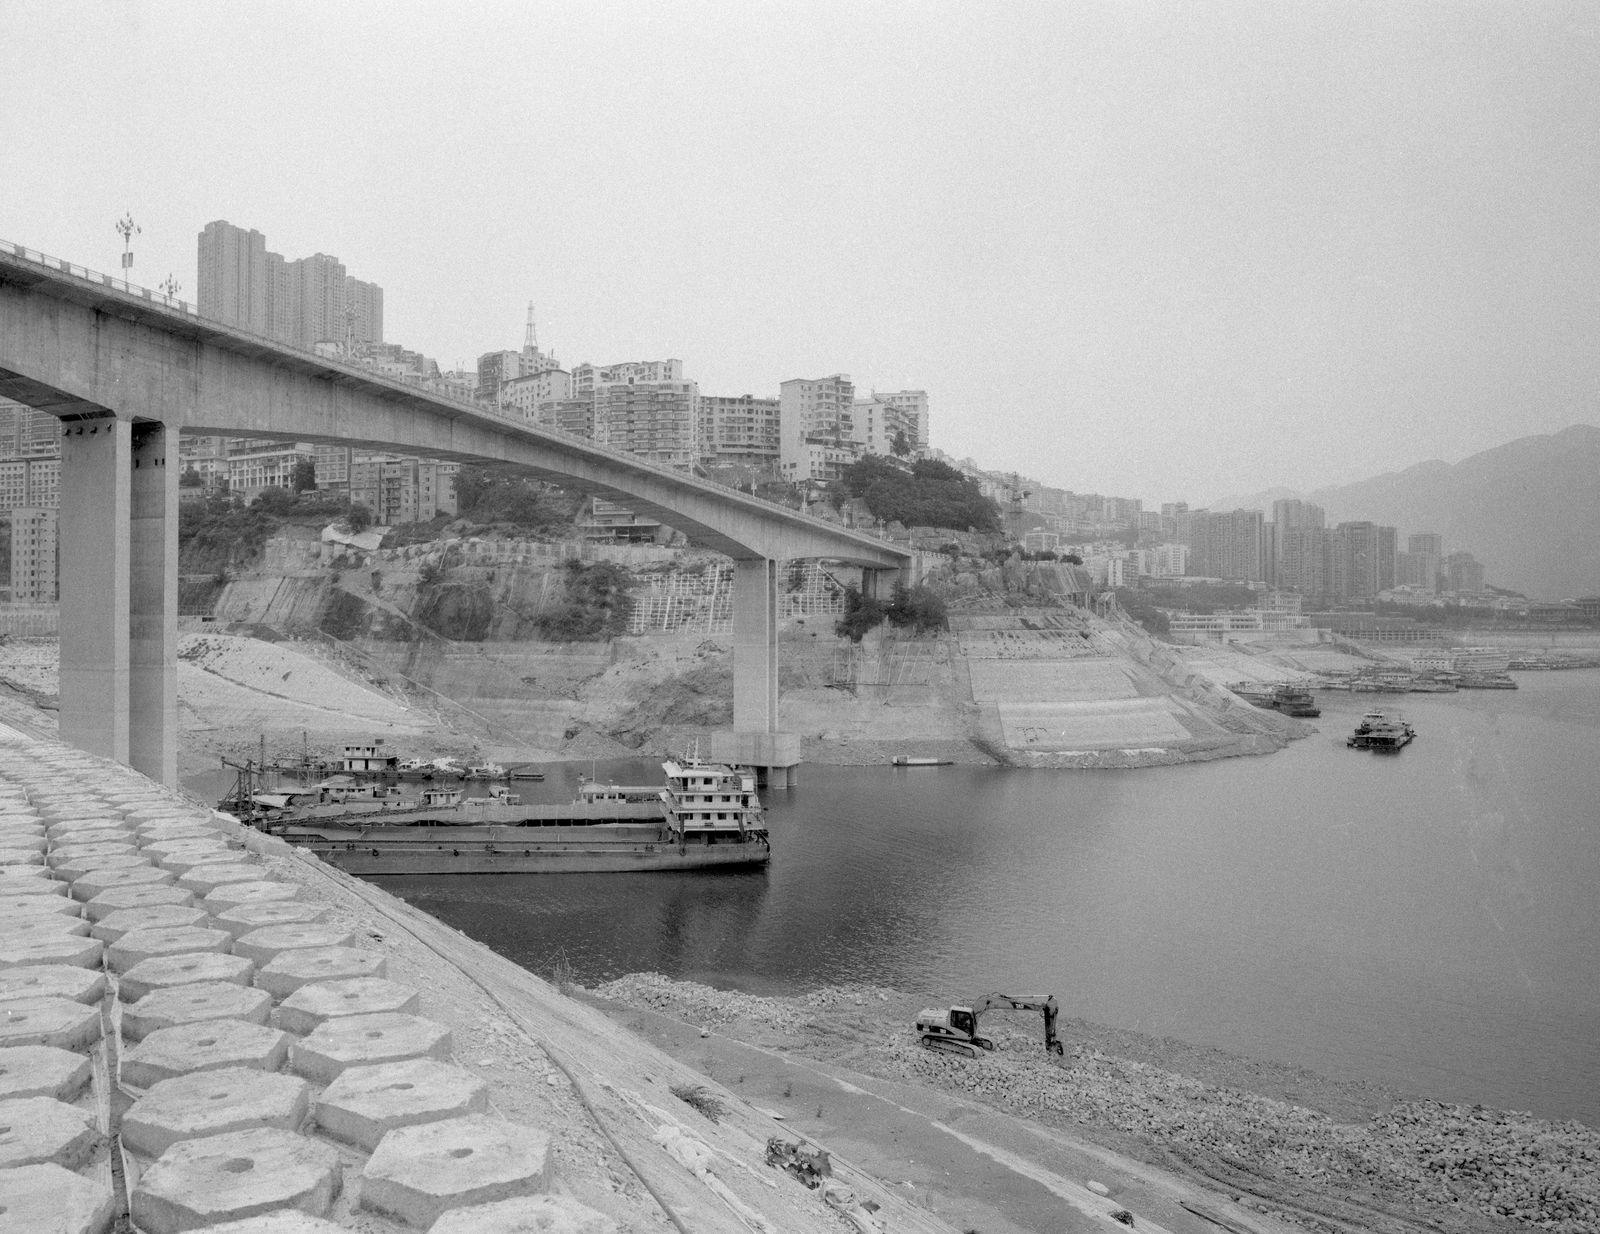 © Yexin Qiu & Moying Zhang - The embankment under construction.